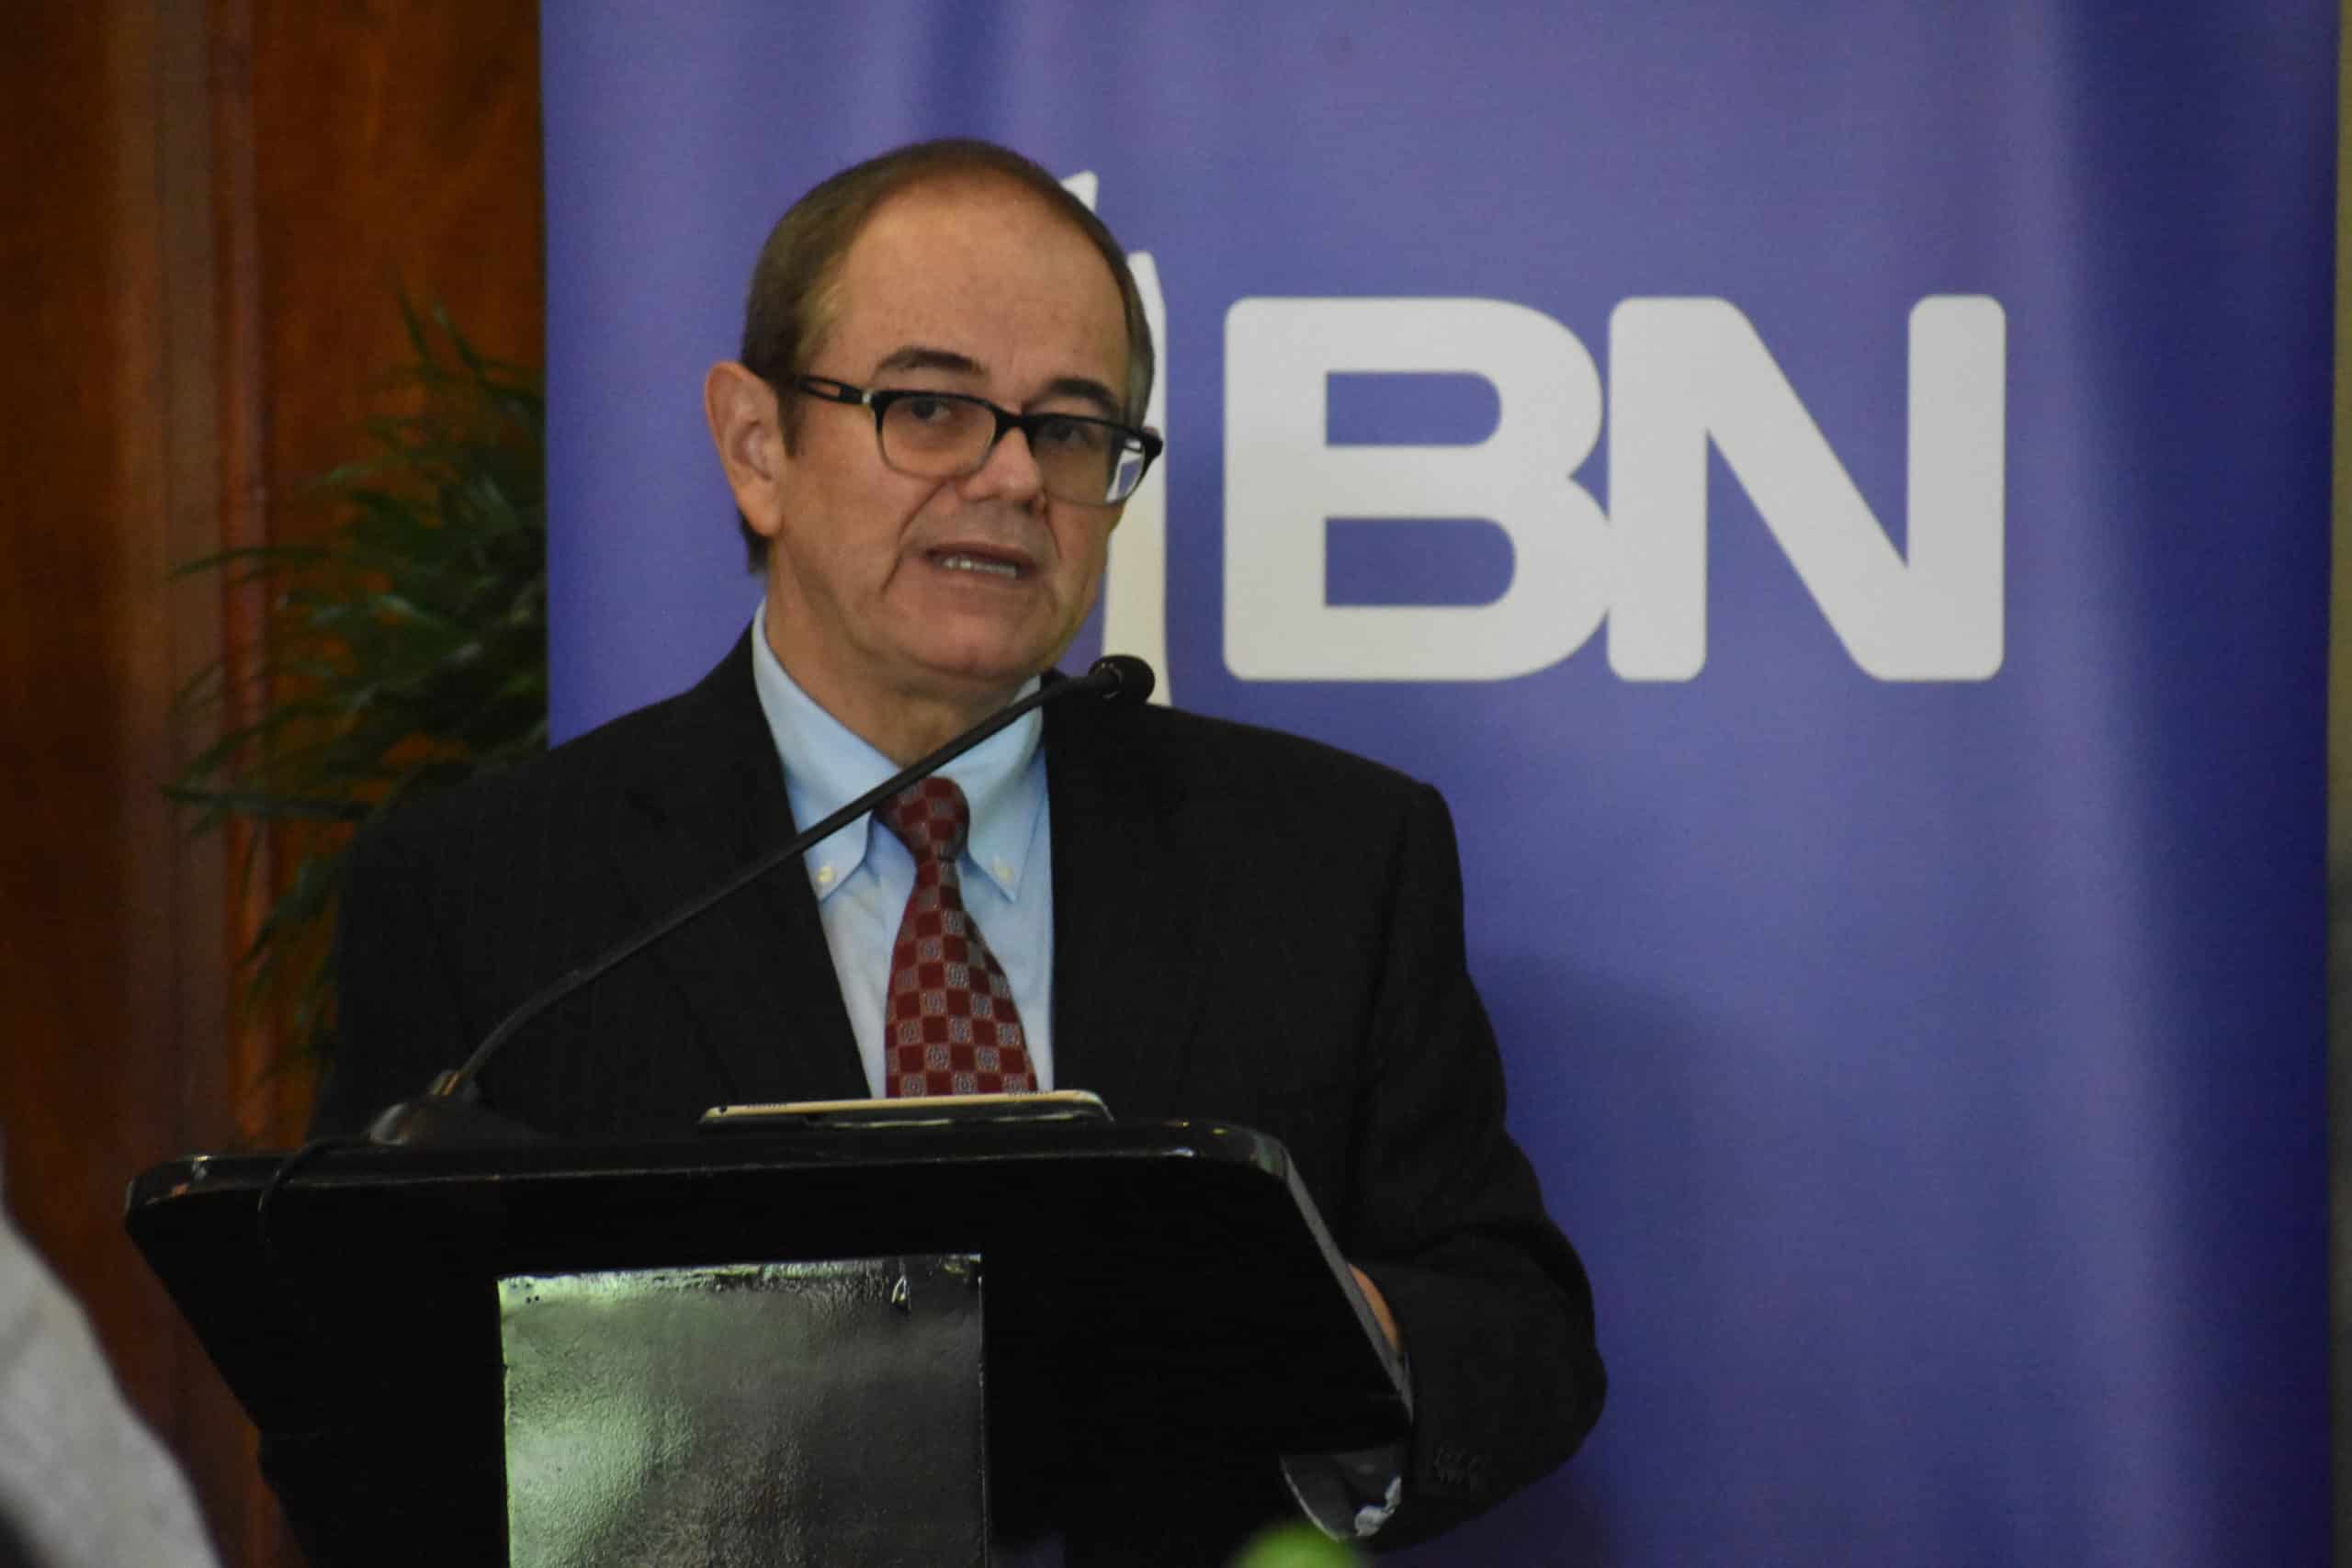 “Banco Nacional no tiene experiencia emitiendo pasaportes o licencias”, reconoce el gerente general sobre asumir servicios del BCR